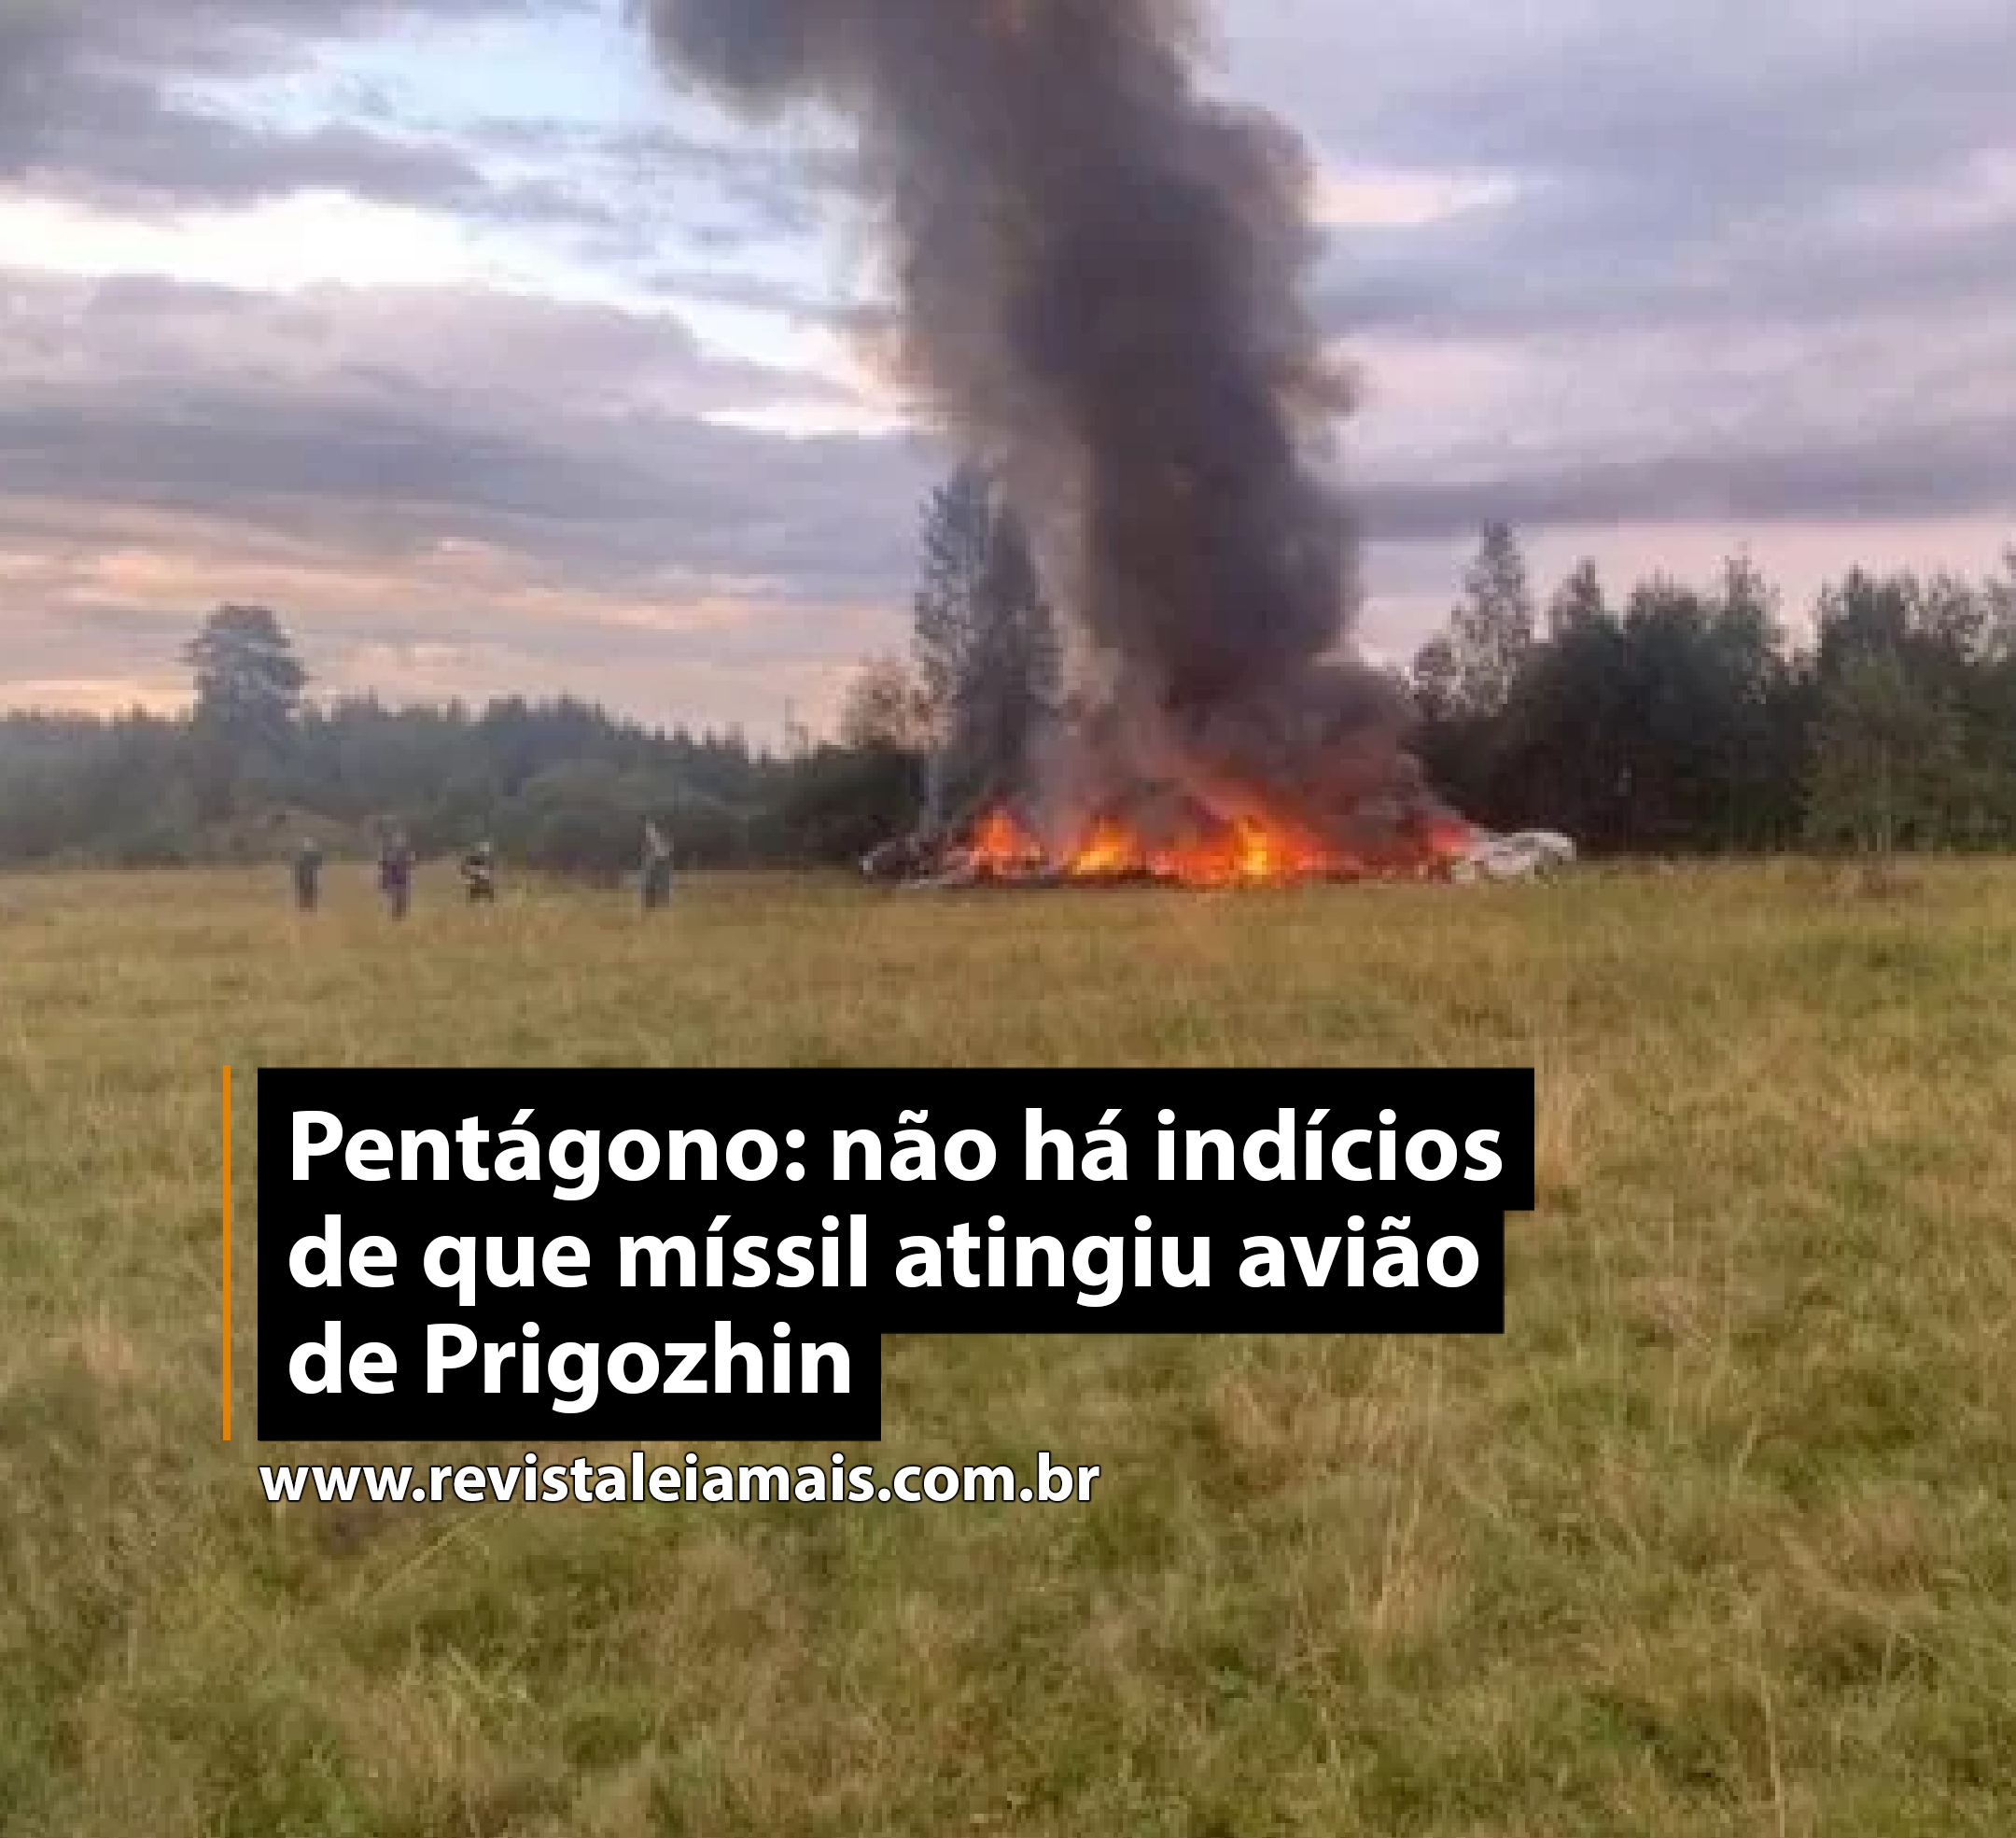 Pentágono: não há indícios de que míssil atingiu avião de Prigozhin